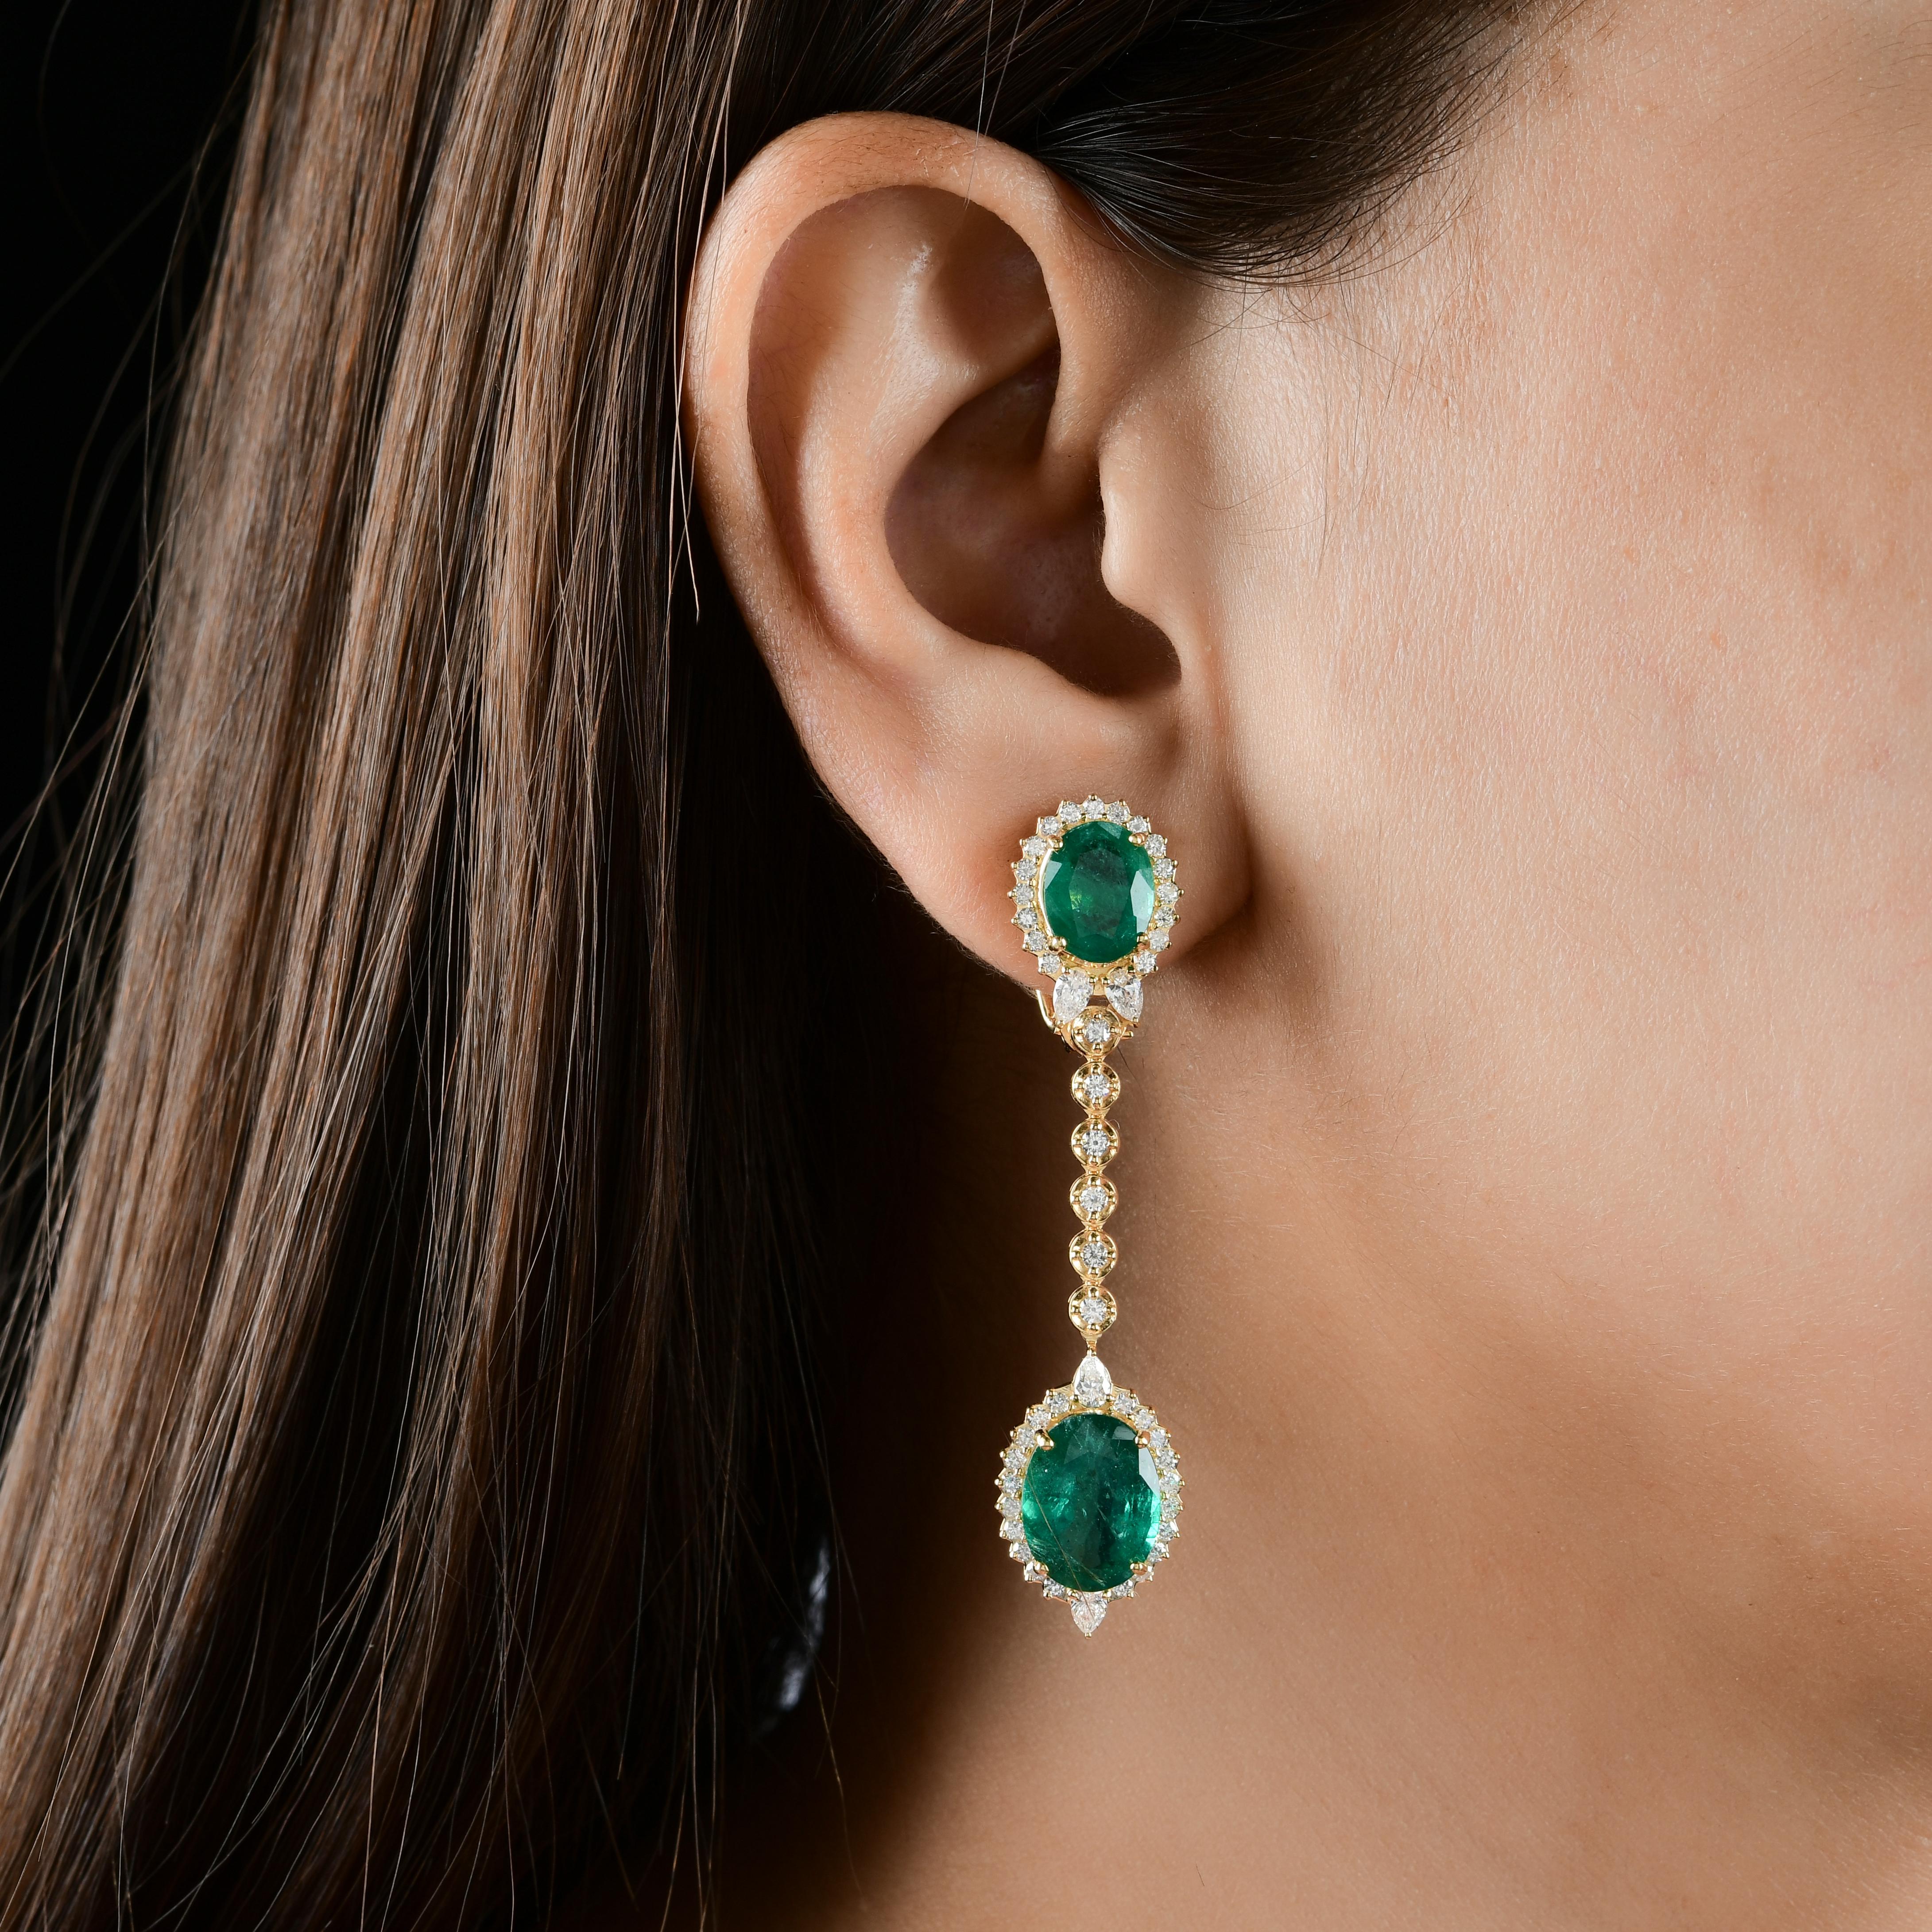 Die Smaragde sind von funkelnden Diamanten umgeben, die dem Design einen Hauch von Glamour und Brillanz verleihen. Diese Diamanten sind von höchster Qualität und wurden sorgfältig gefasst, um ihr Feuer und ihre Brillanz zu maximieren und einen